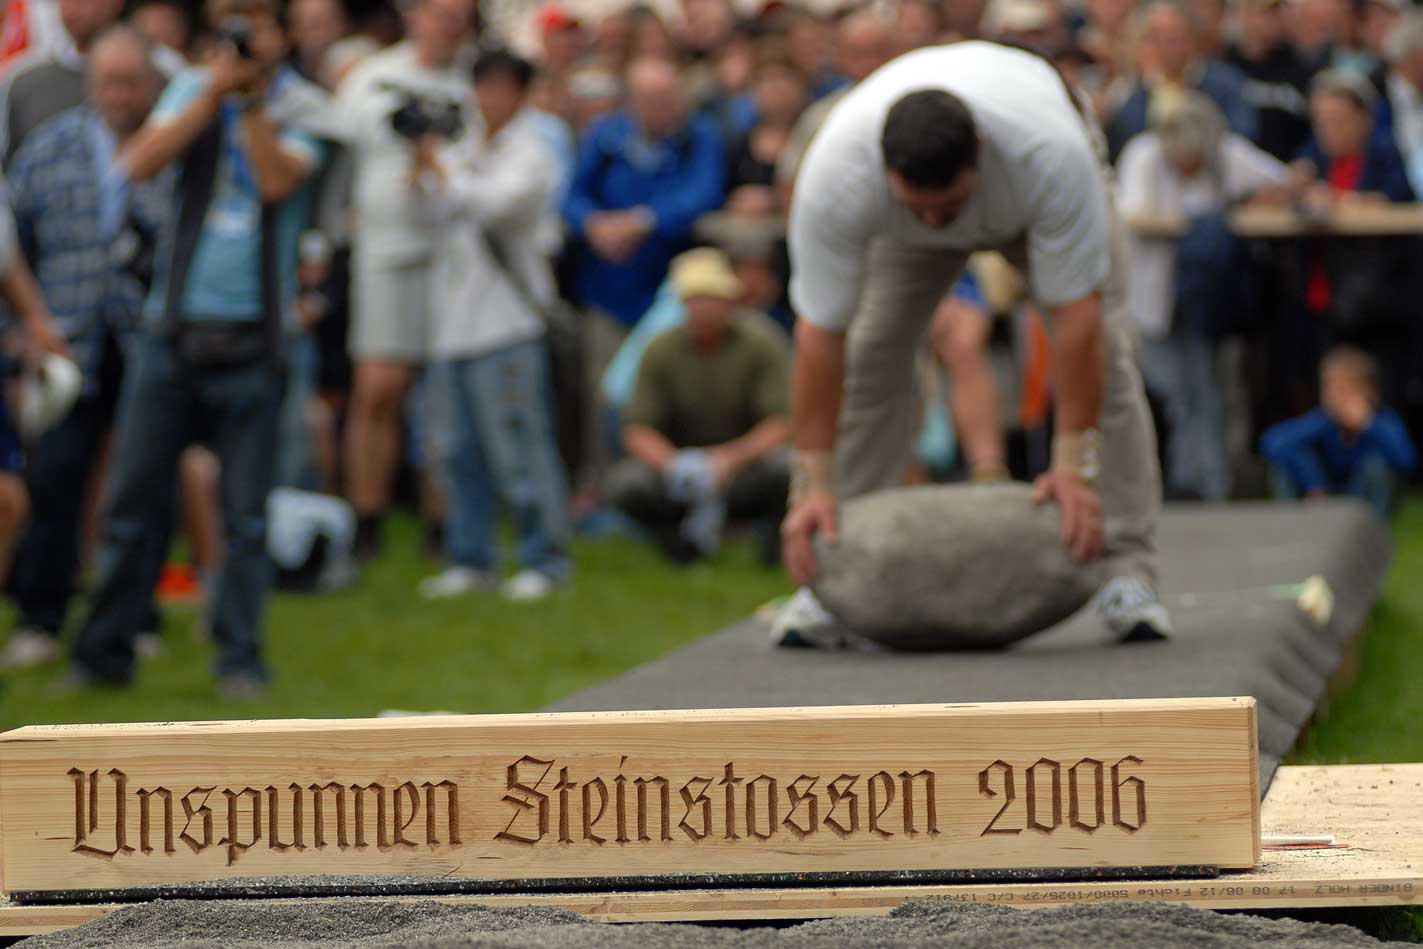 Stone throwing at the 2006 Unspunnen festival © Steiner/Verein Schweizerisches Trachten- und Alphirtenfest Unspunnen